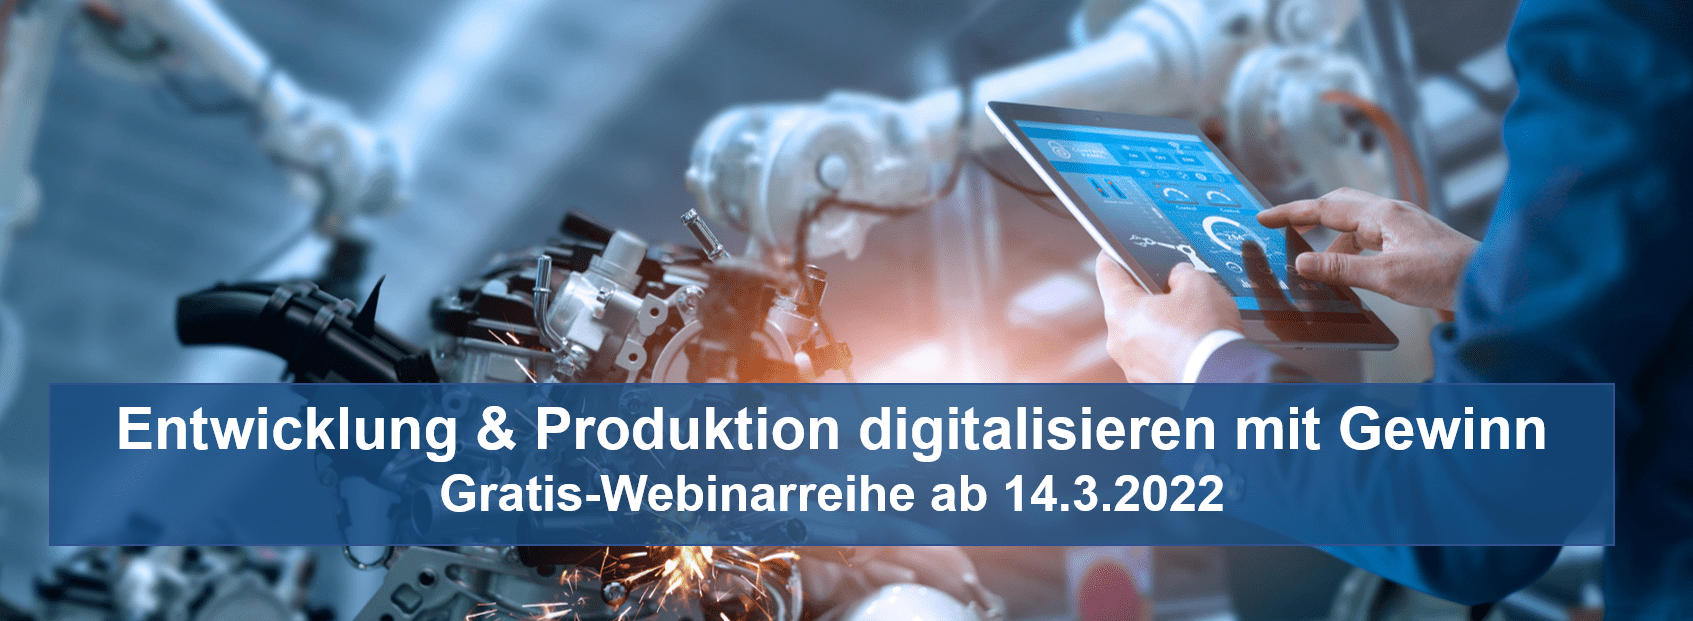 Webinarreihe Entwicklung & Produktion digitalisieren mit Gewinn ab 14.3.2022